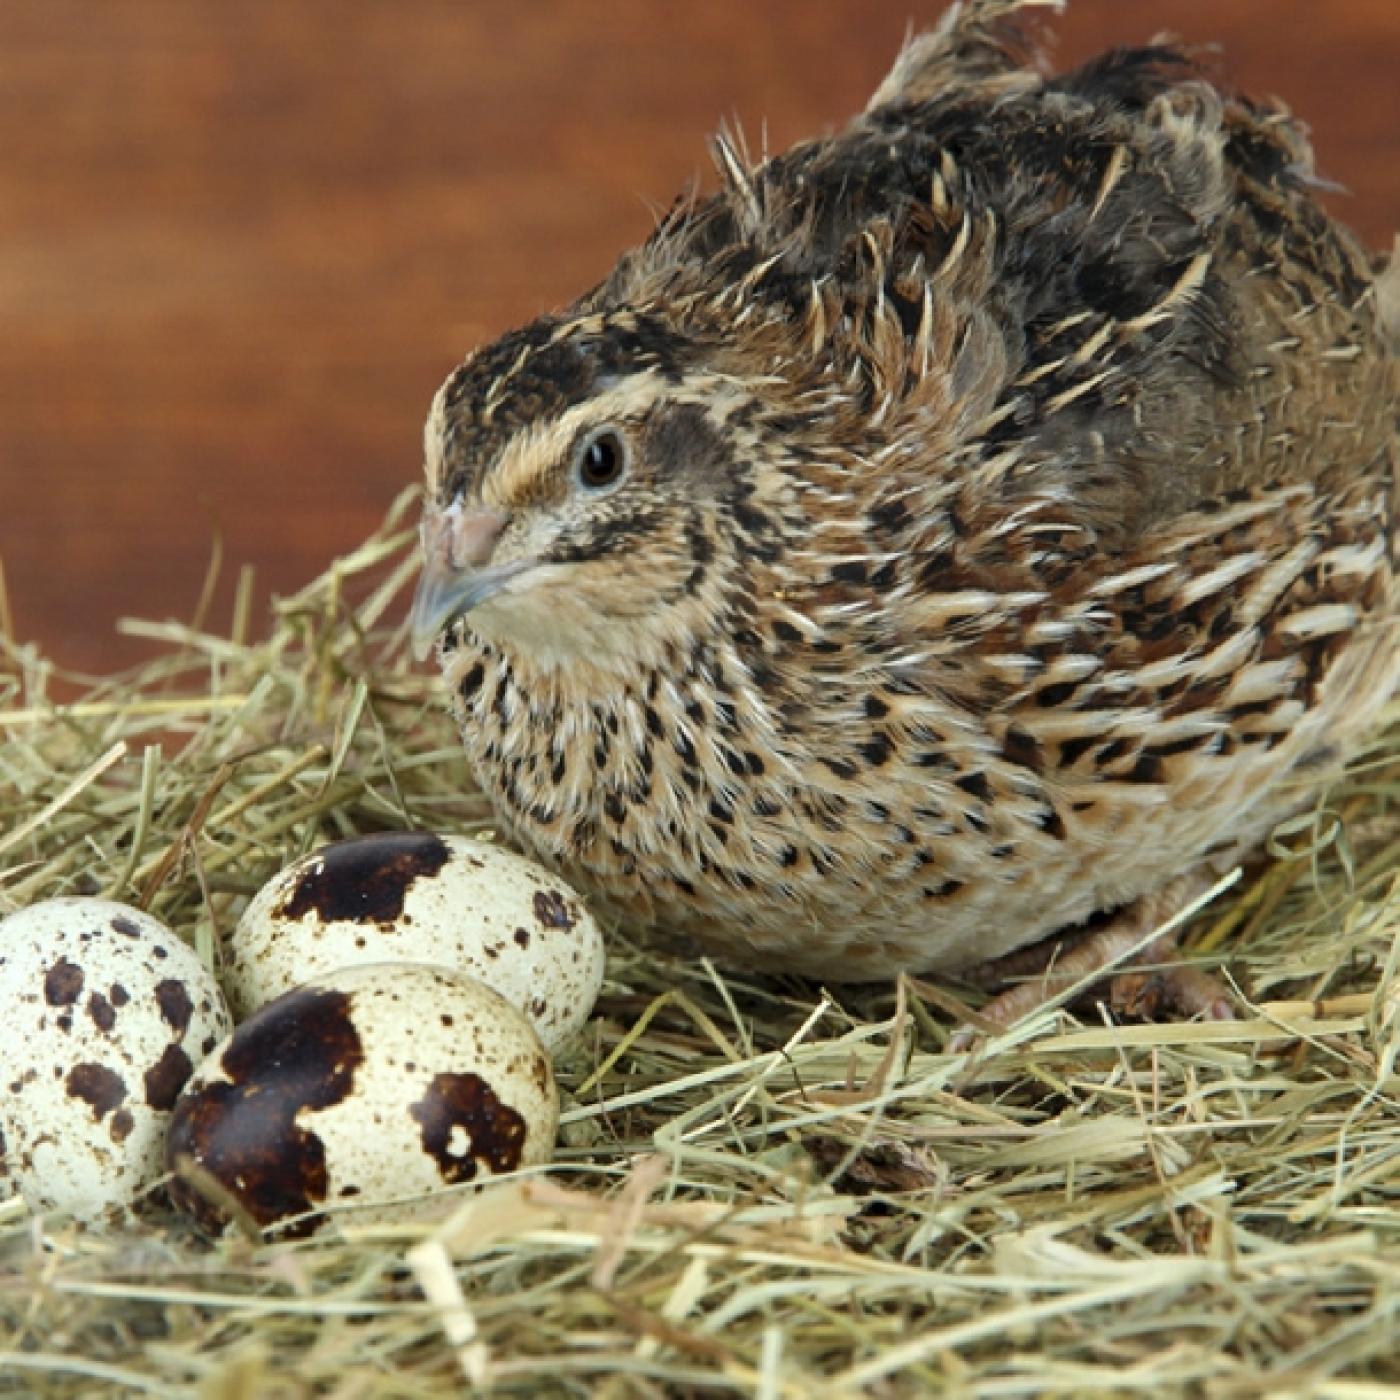 Nuôi chim cút siêu trứng mang đến nhiều lợi nhuận nếu đầu tư đúng cách